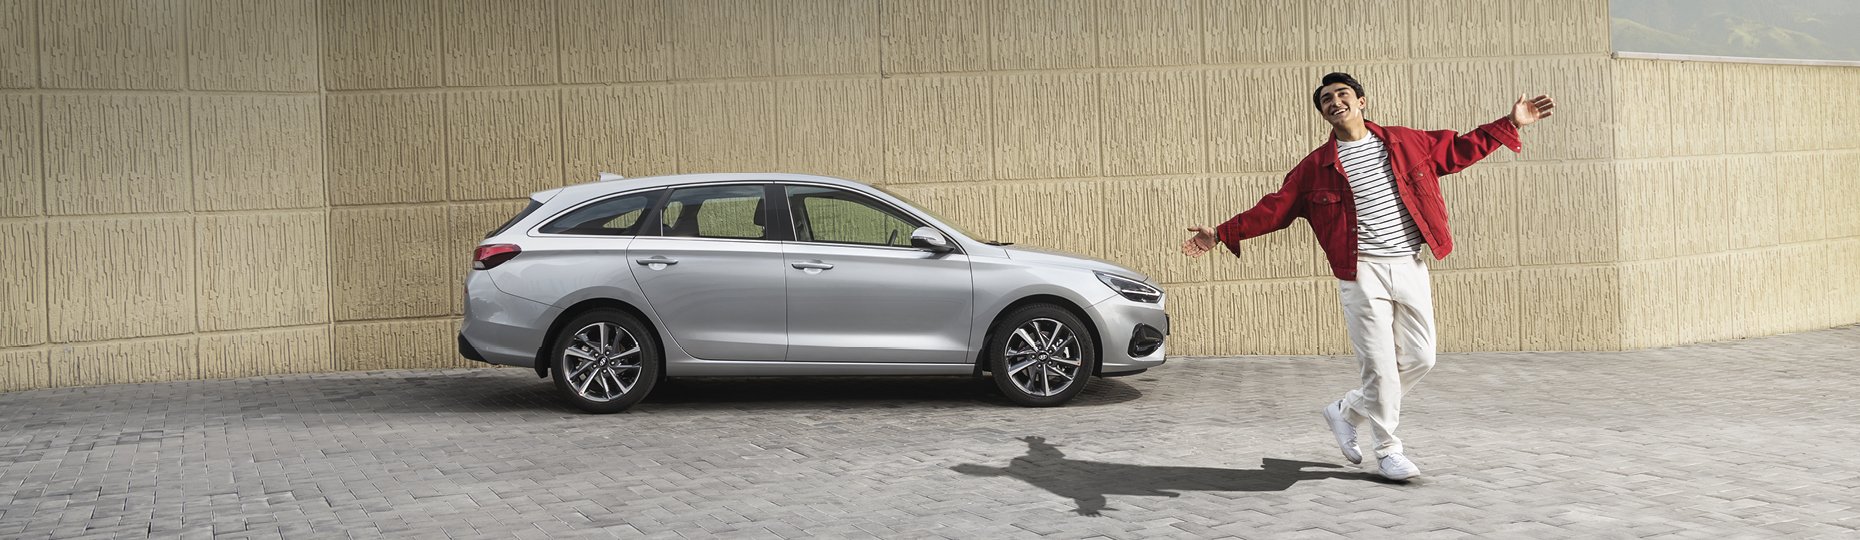 Производительность новой Hyundai i30 | Официальный дилер в Шымкенте